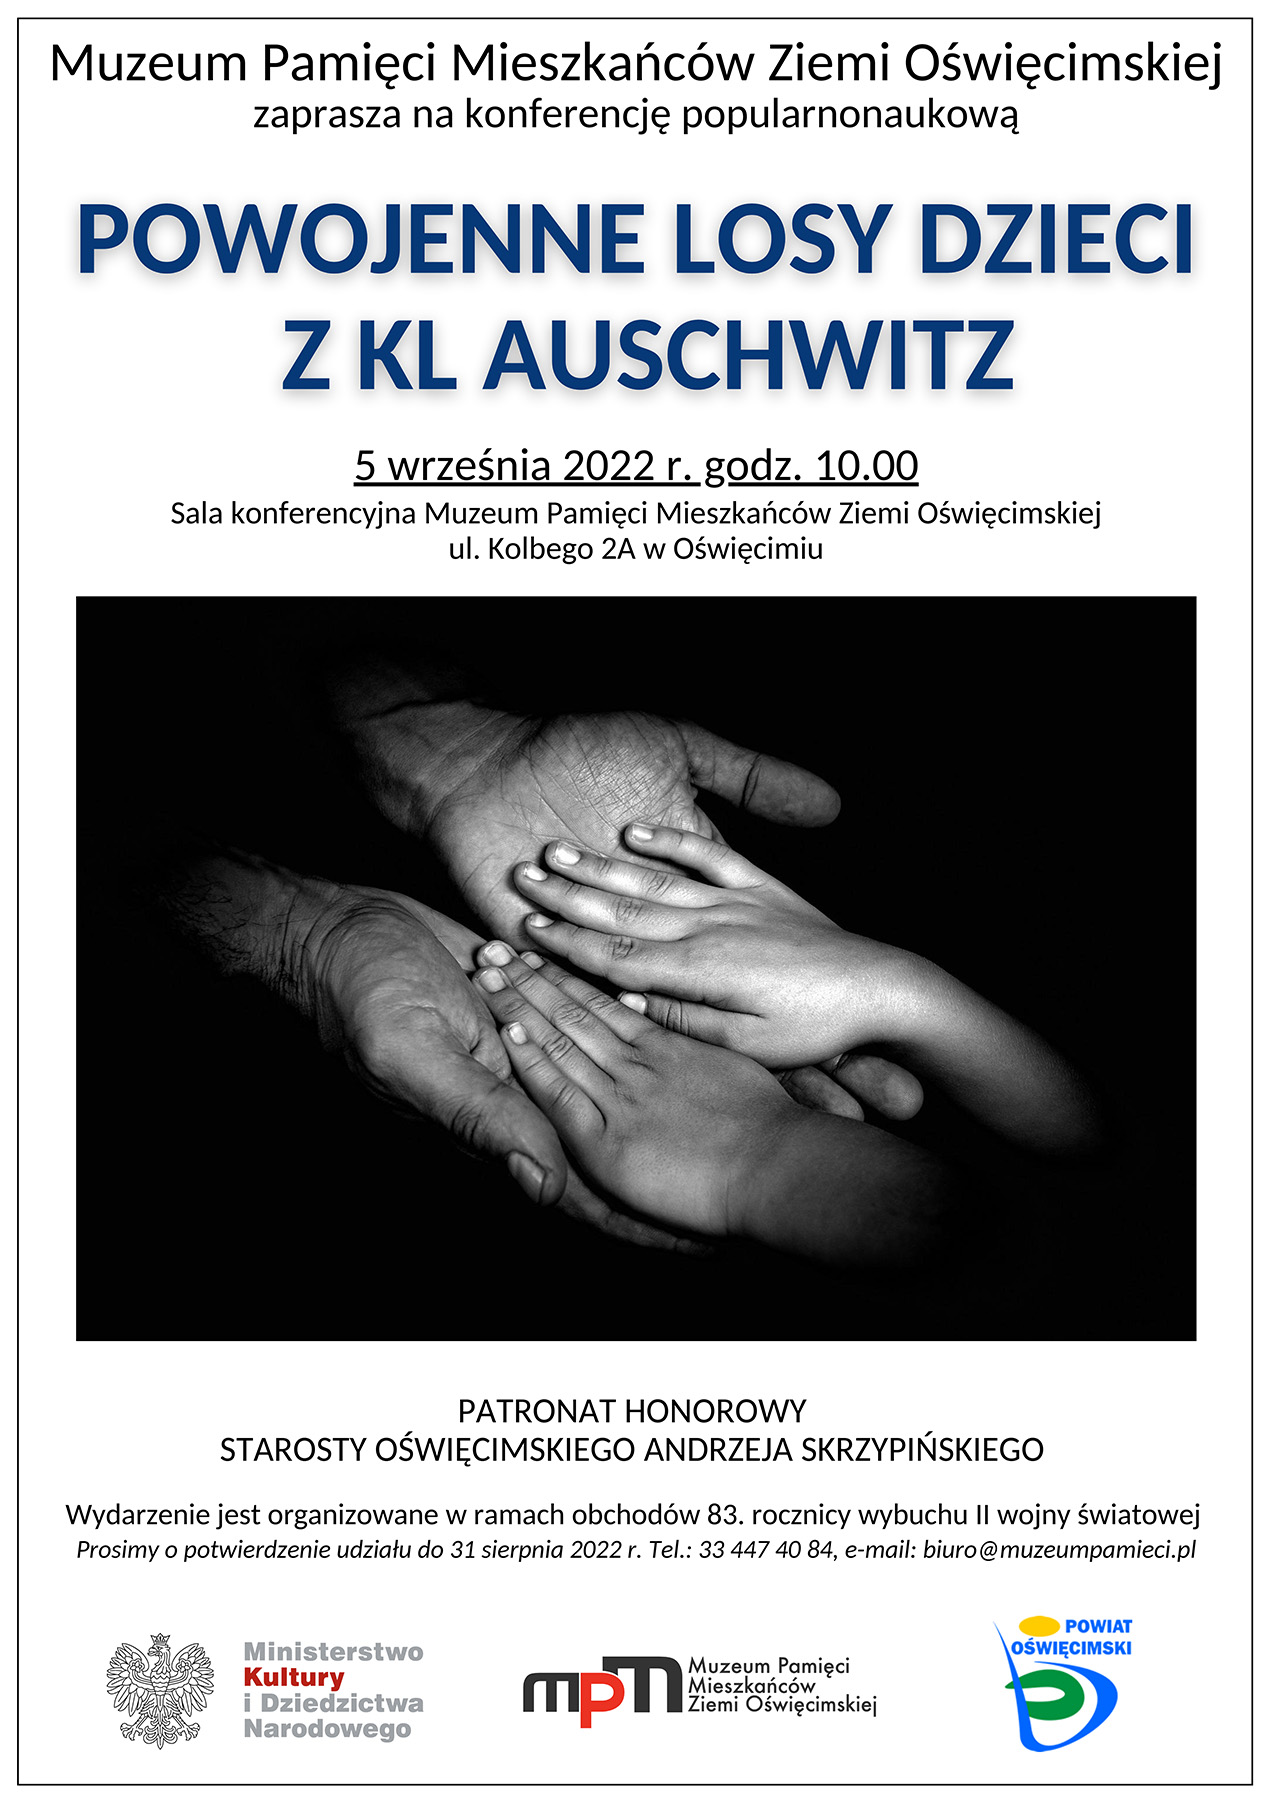 The post-war fate of children from KL Auschwitz